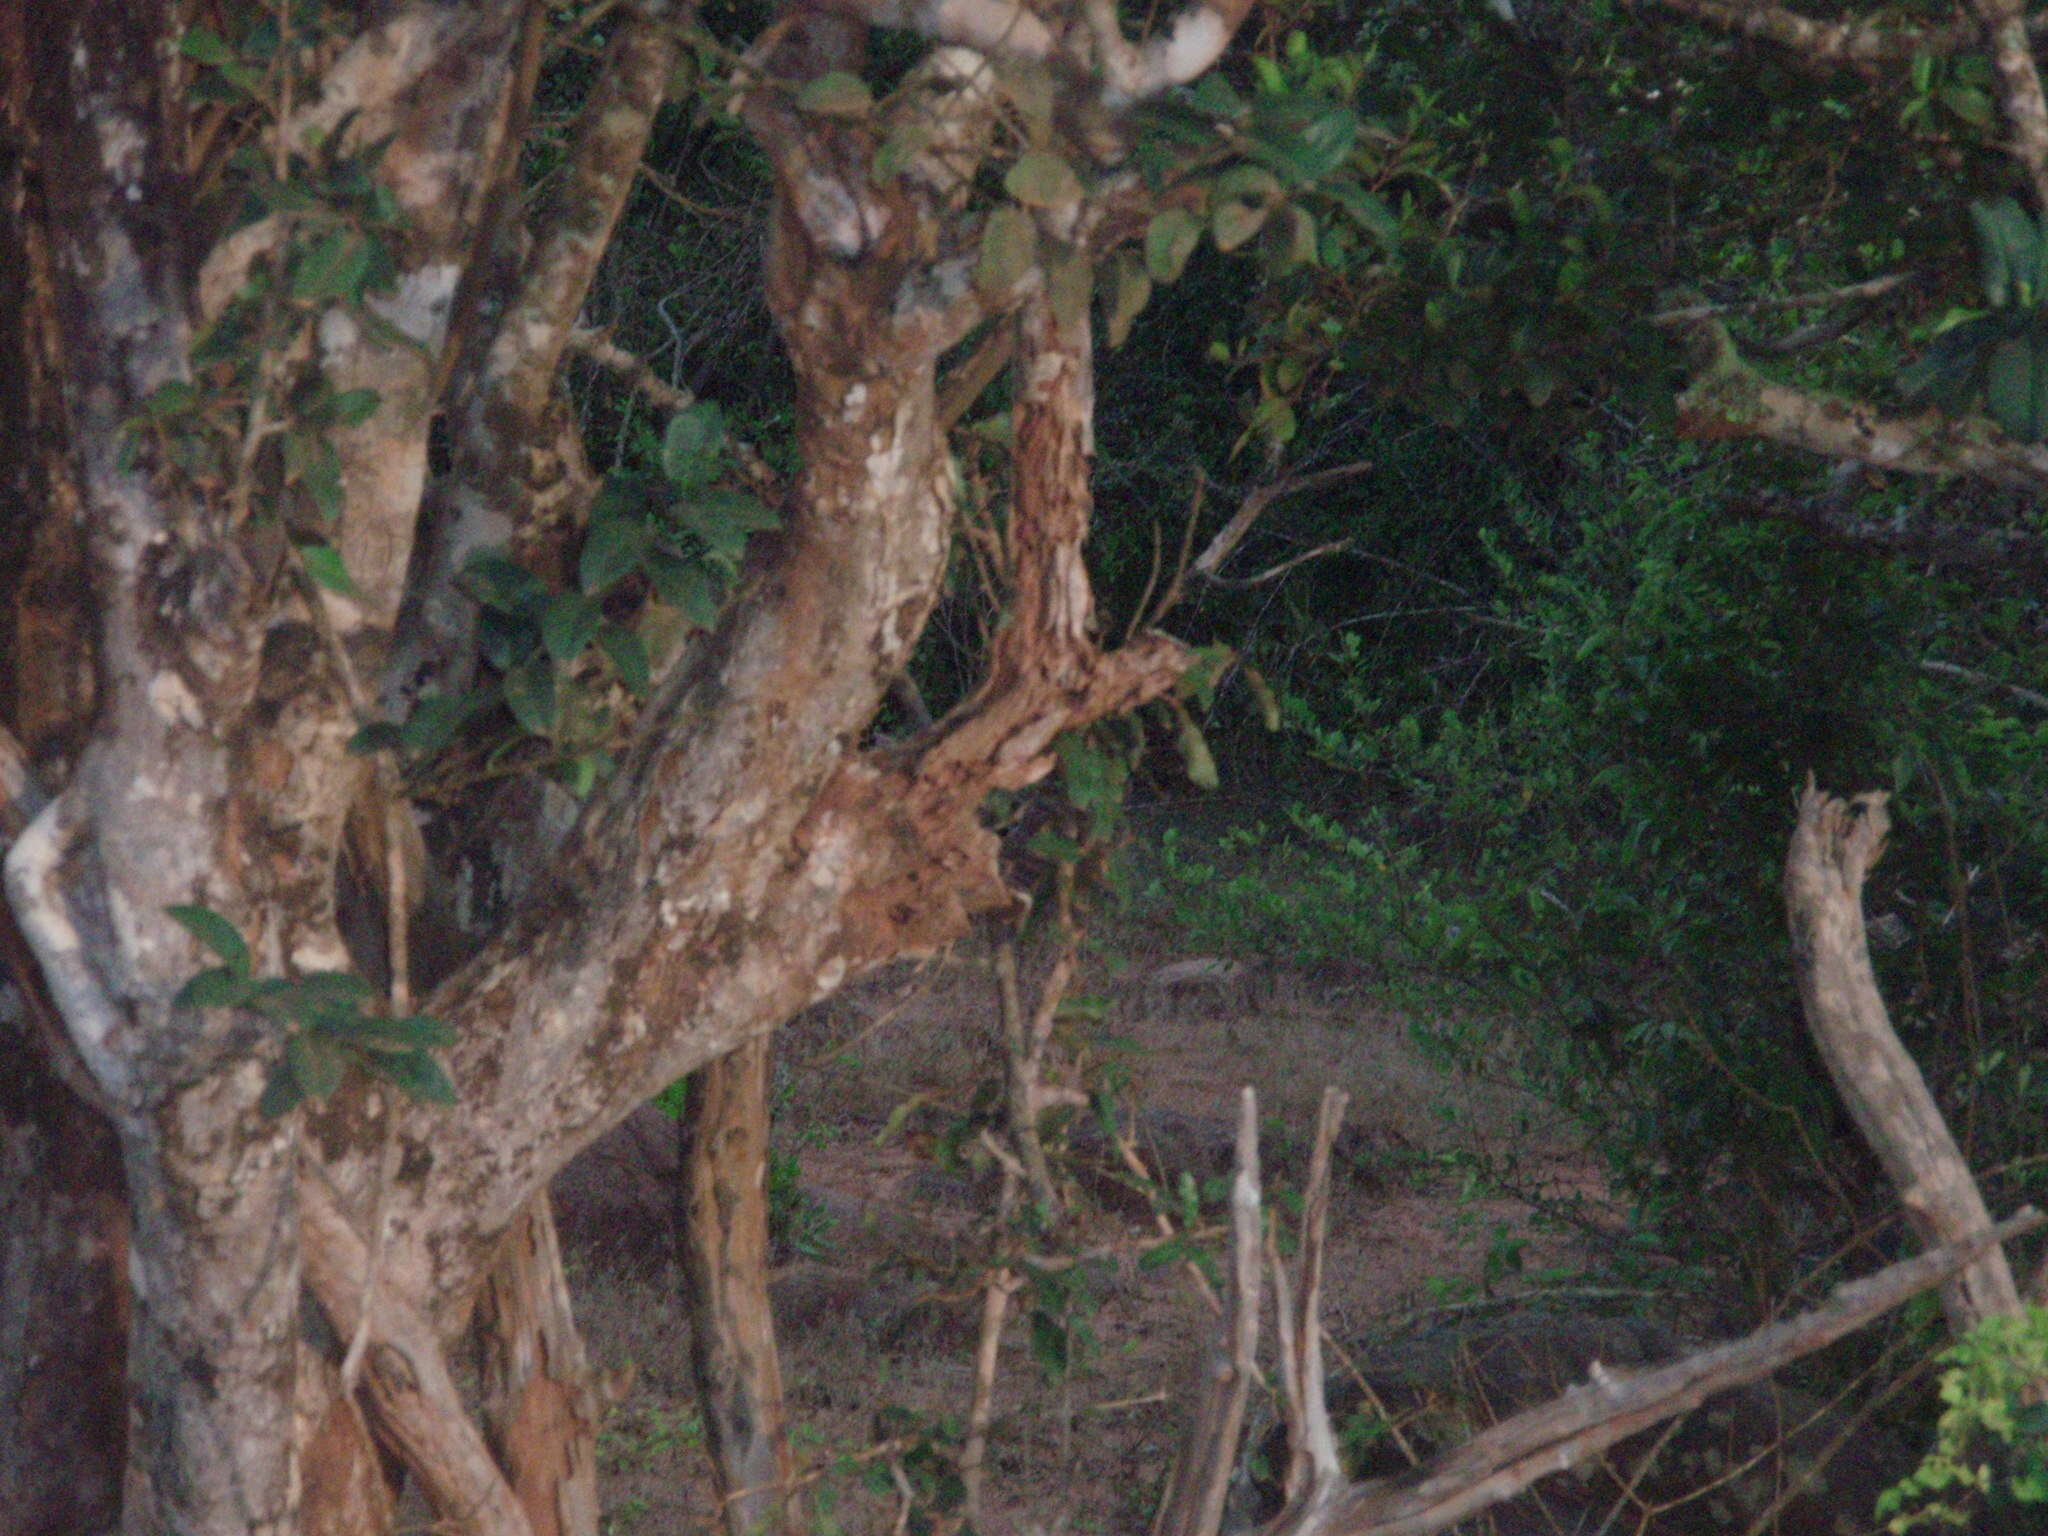 Image of Sri Lankan leopard